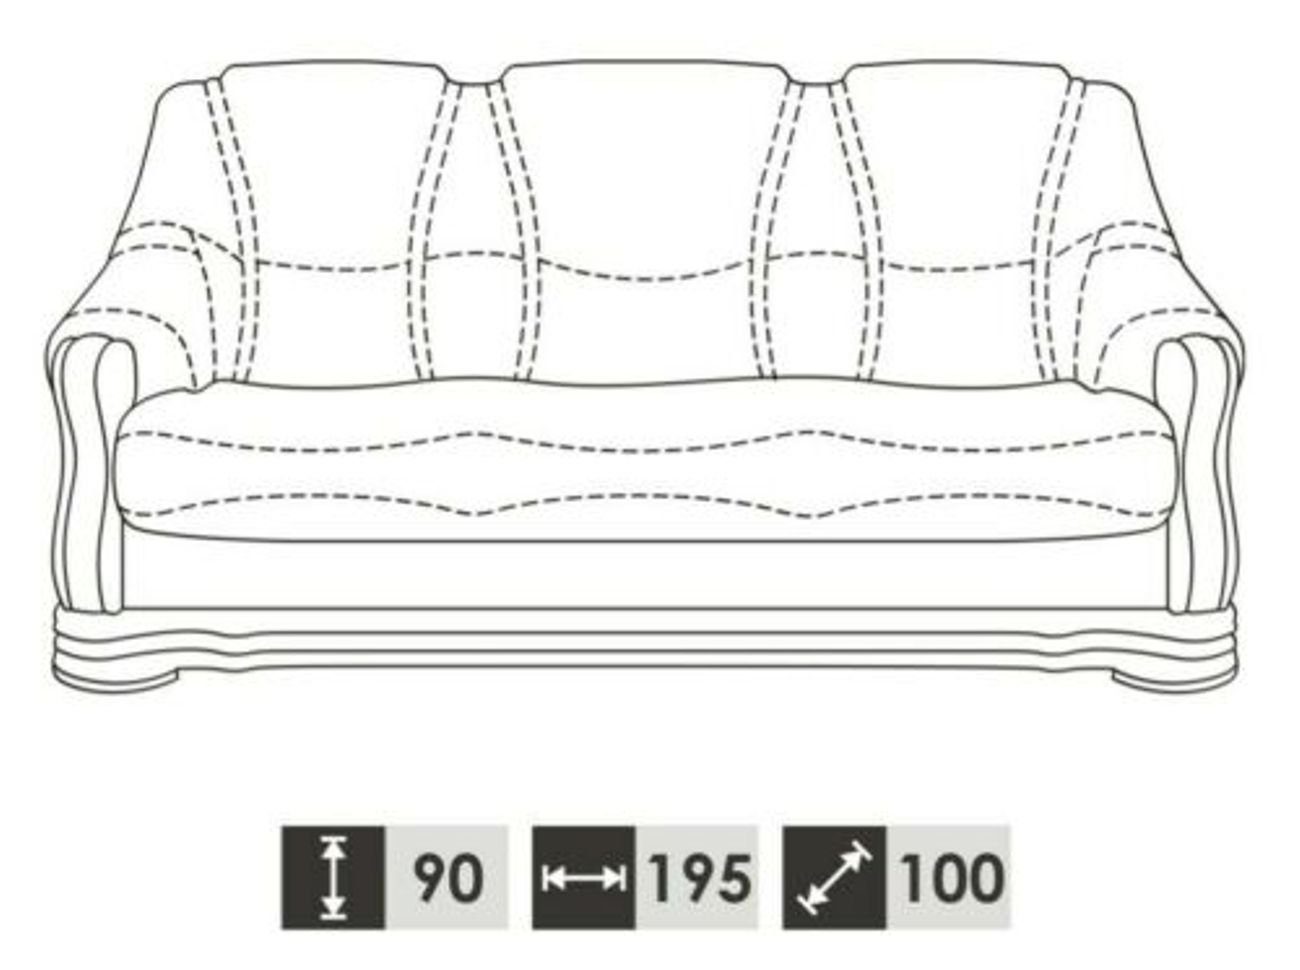 Sofagarnitur in Wohnlandschaft 3+1+1 Made Sitzer Europe JVmoebel Sofa Sofa, Klassischer